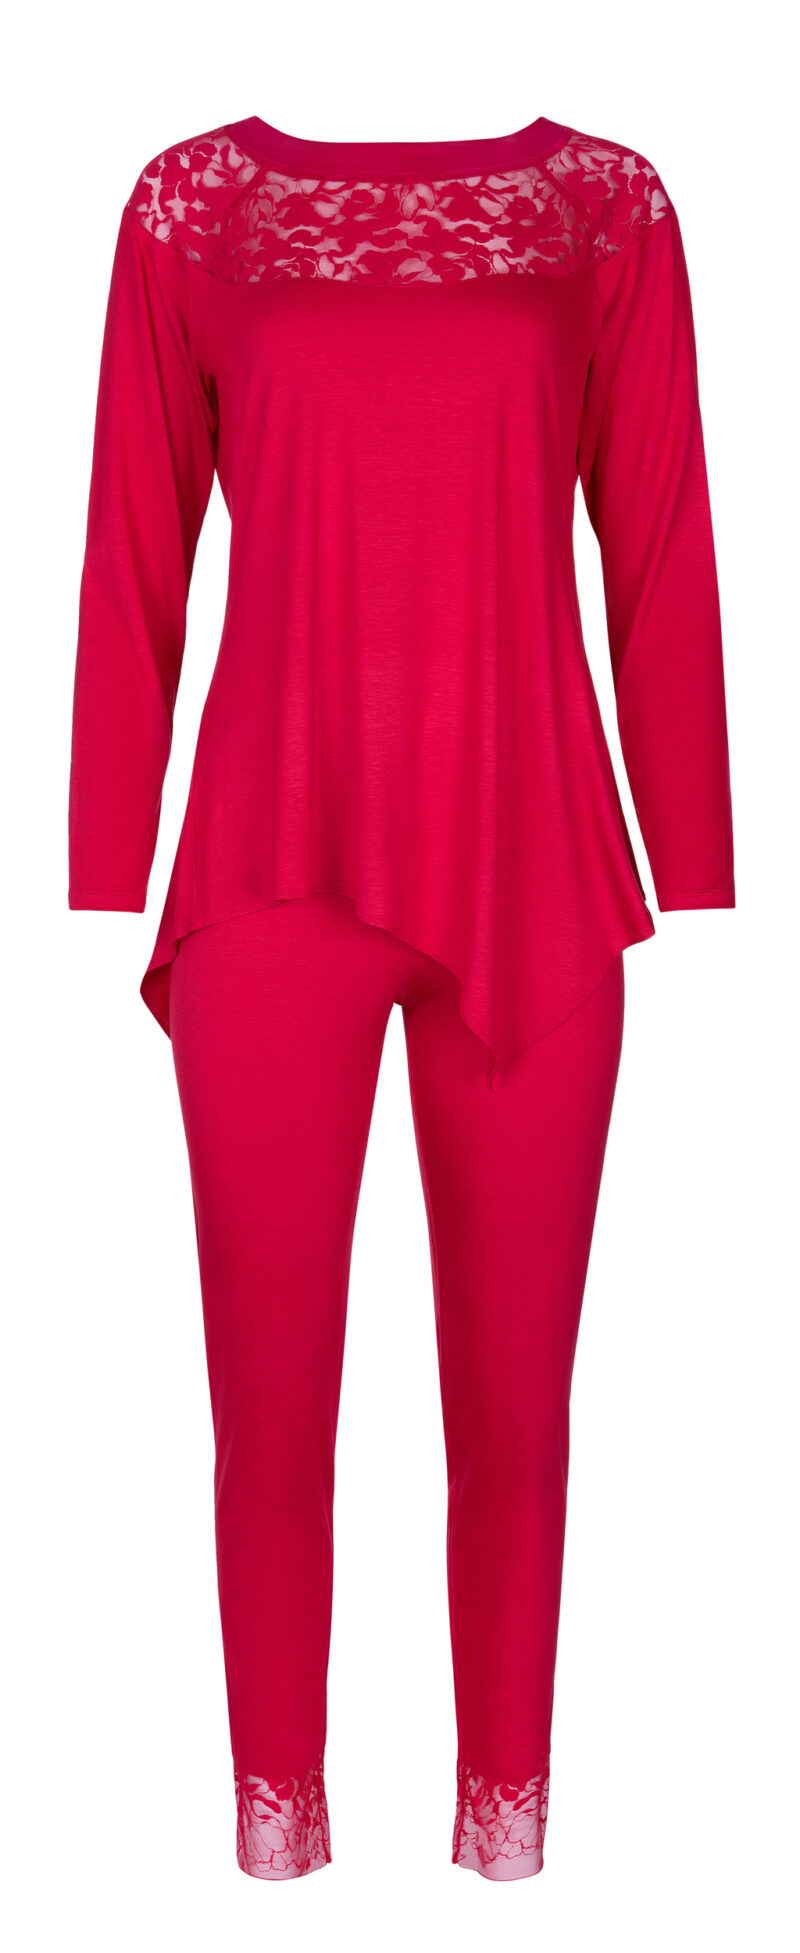 Lingerie By M - Lisca Selection FLAMENCO Pyjama Red Flame - Voel de passie van de nacht met de Lisca FLAMENCO Pyjama. Deze verleidelijke pyjama combineert luxe en comfort voor een onvergetelijke slaapervaring. De FLAMENCO Serie van Lisca belichaamt elegantie en passie met zijn fijne ontwerp en zachte materialen. Begeef je op een reis van stijl en sensualiteit met de FLAMENCO Pyjama. Om deze verbluffende nachtmode te ontdekken en te bestellen